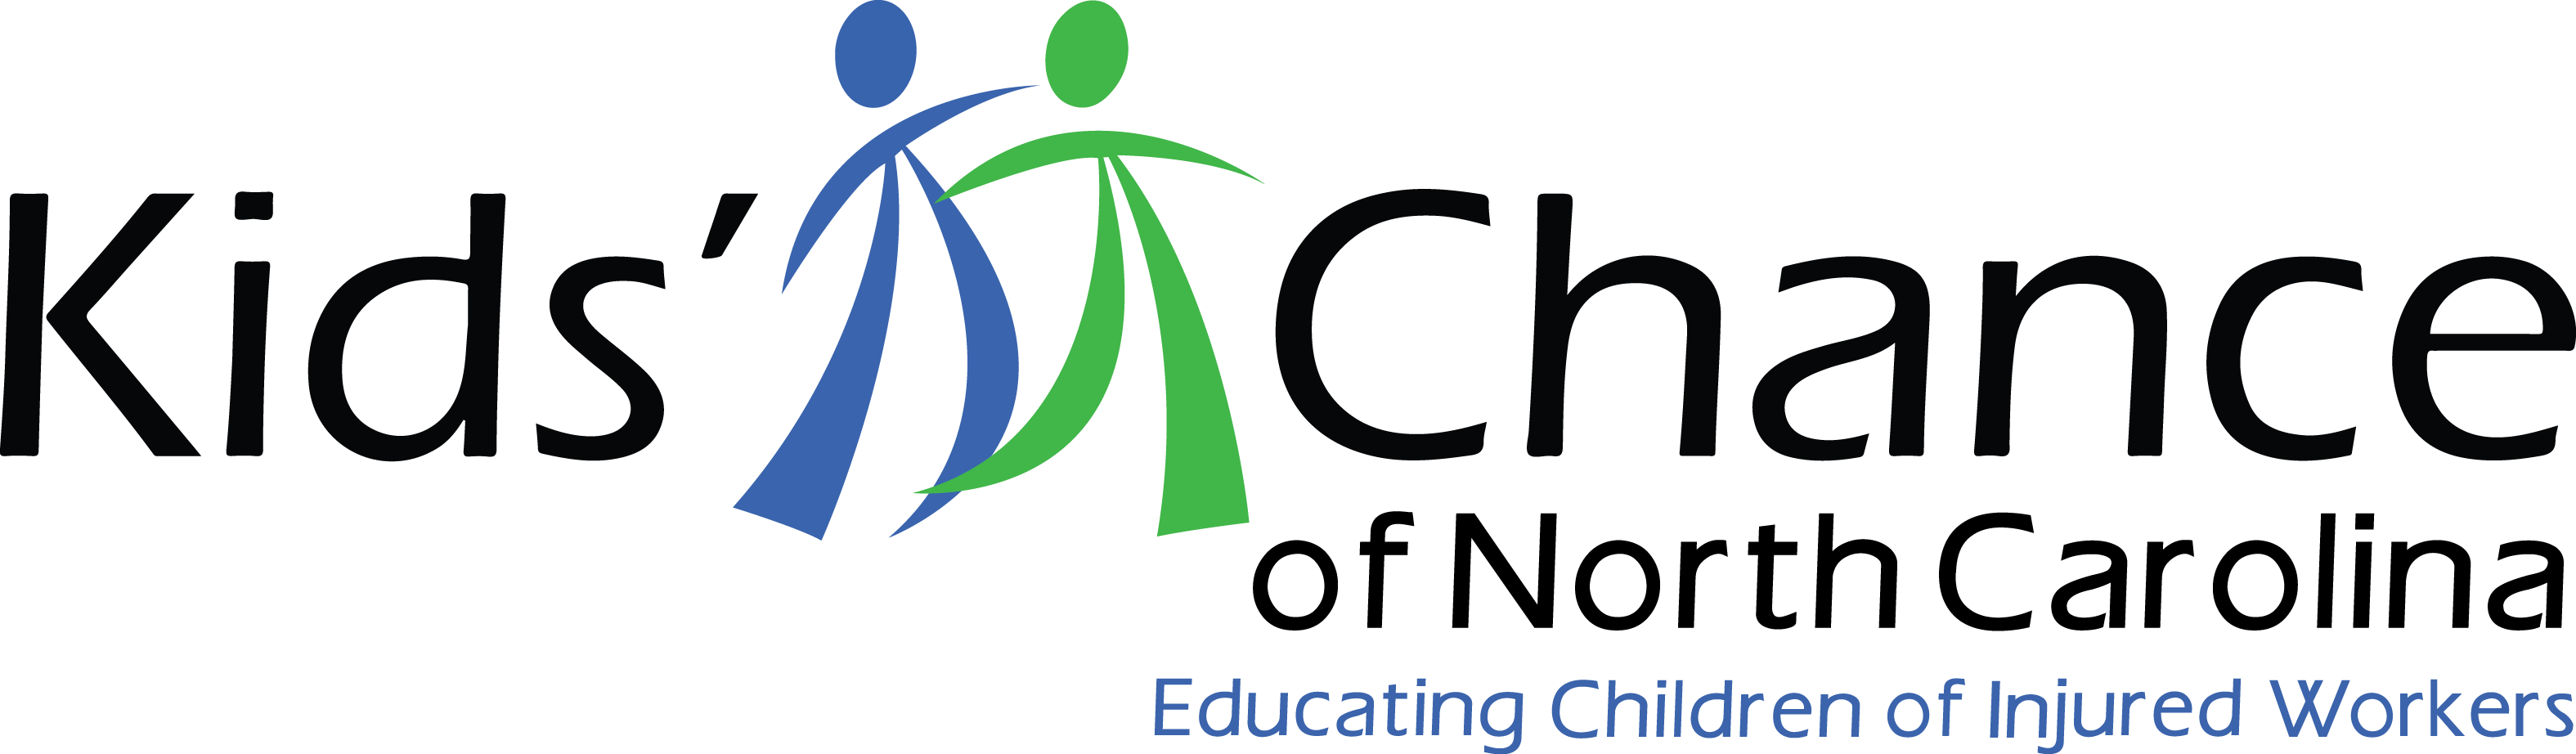 Logo - Kids Chance (3150x922)